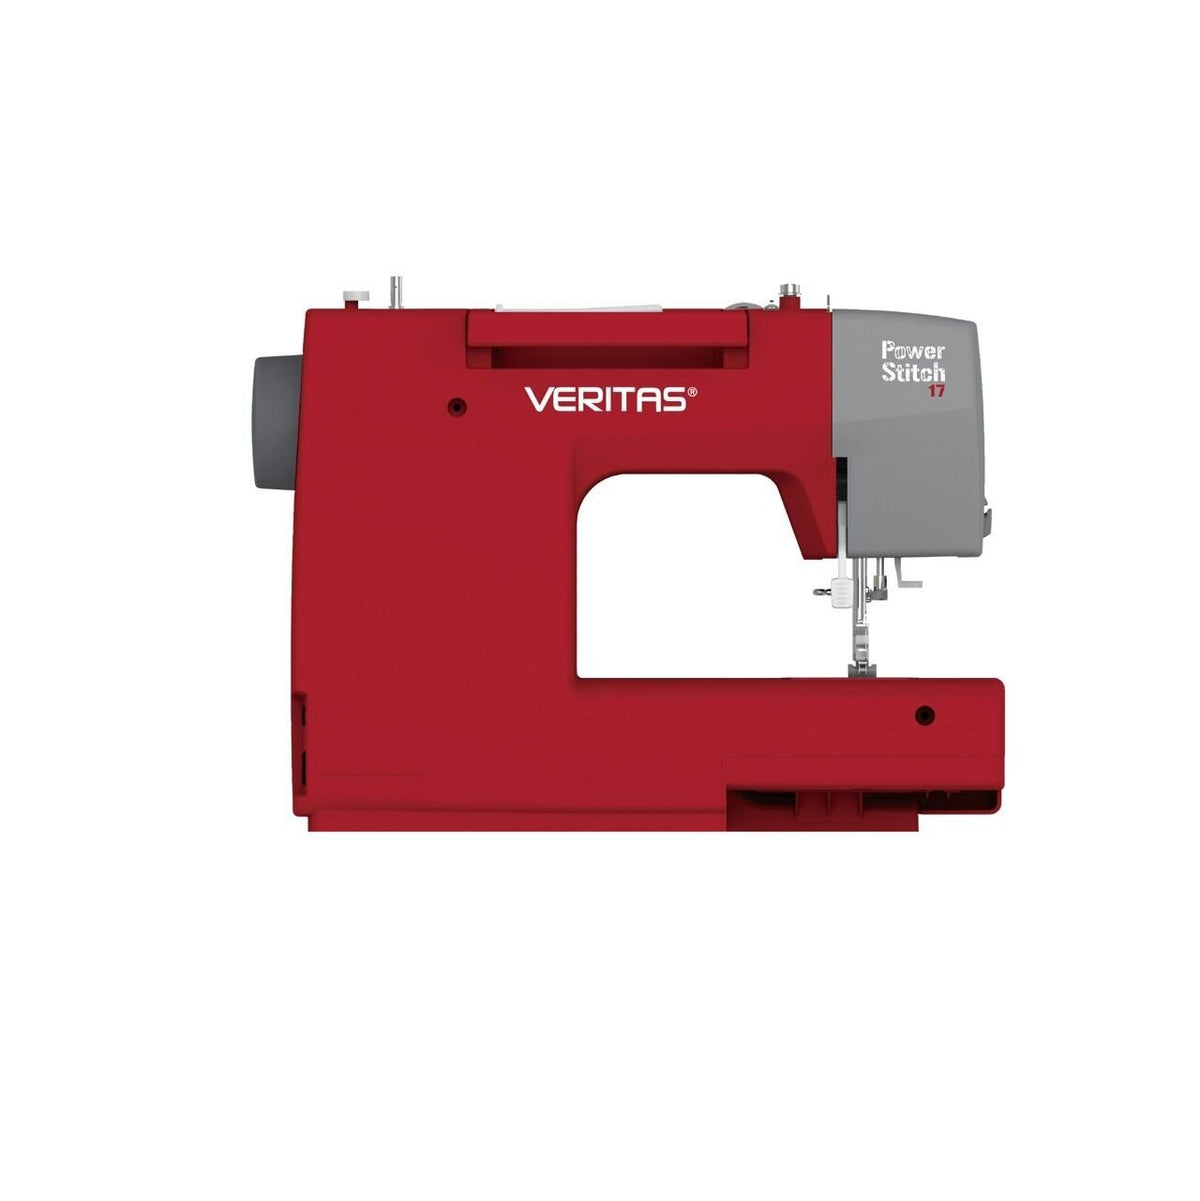 Šijací stroj Veritas Power Stitch 17